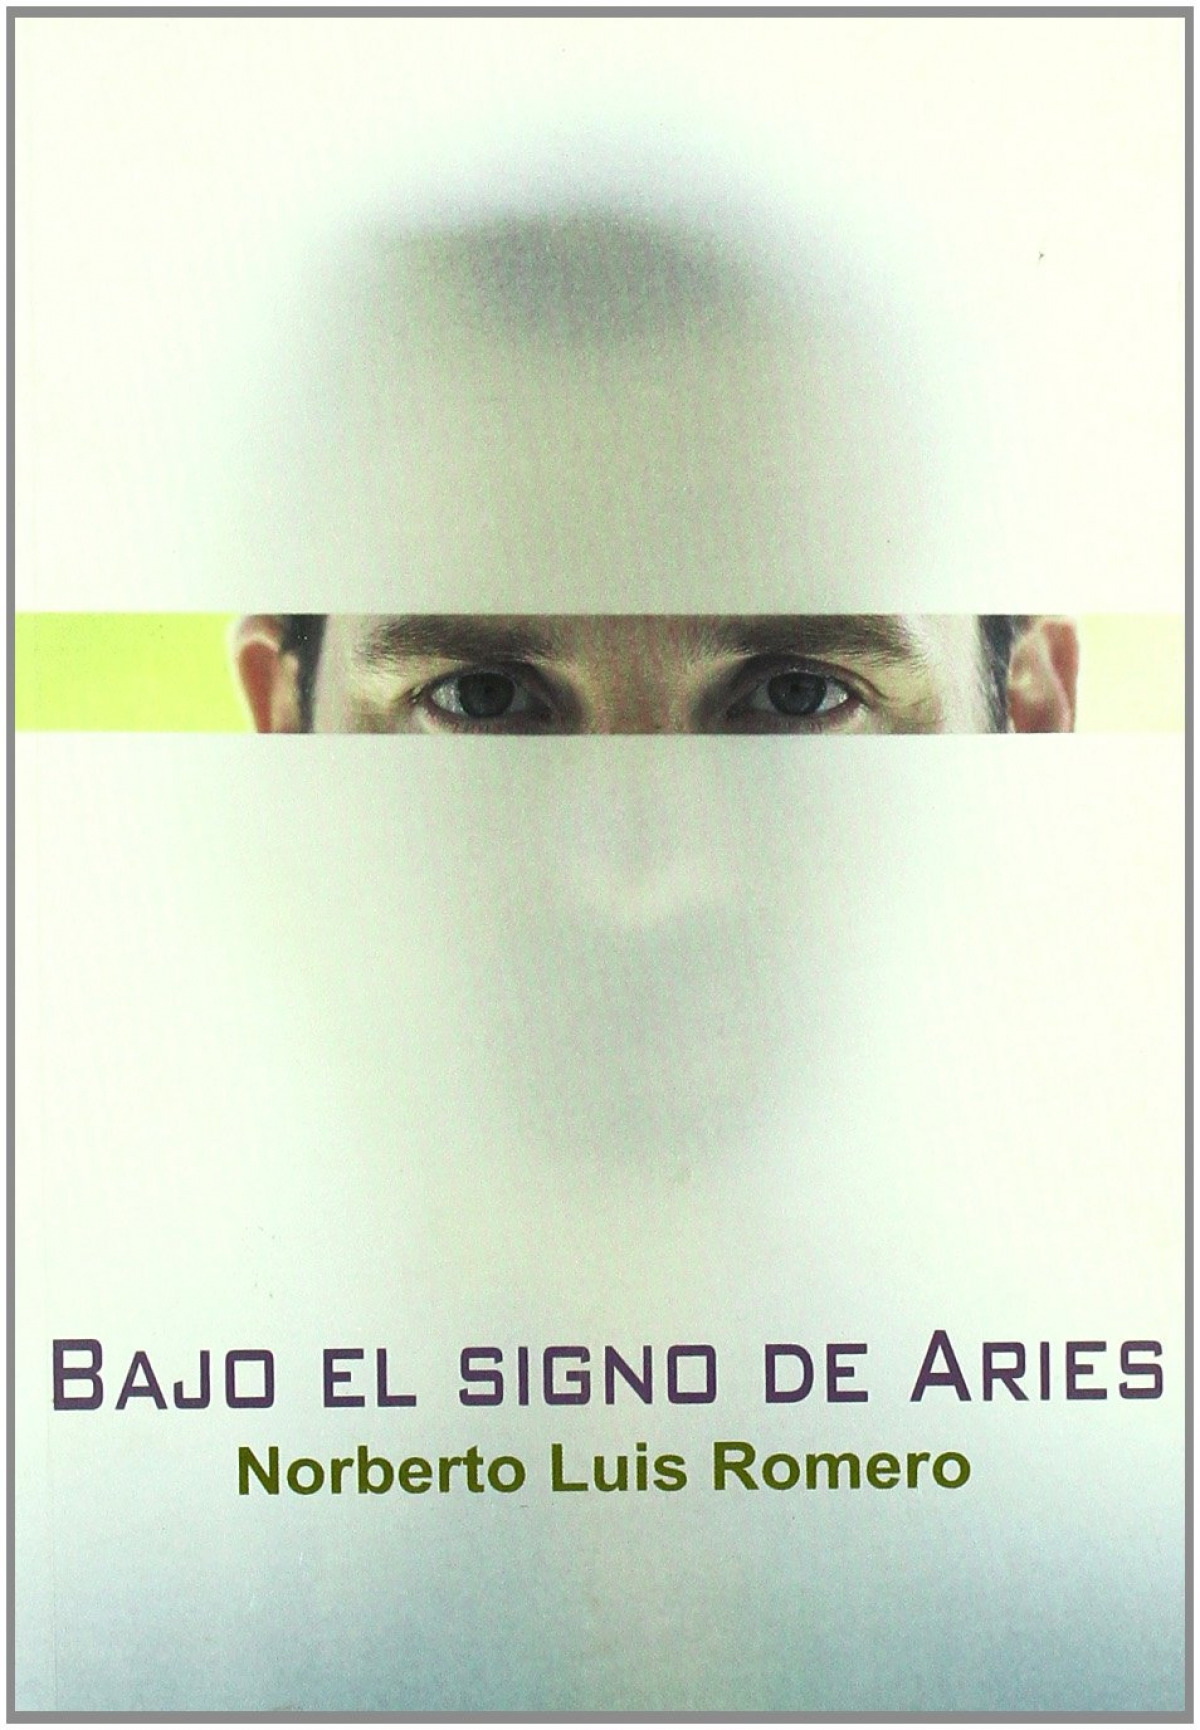 Bajo el signo de aries - Romero, Norberto